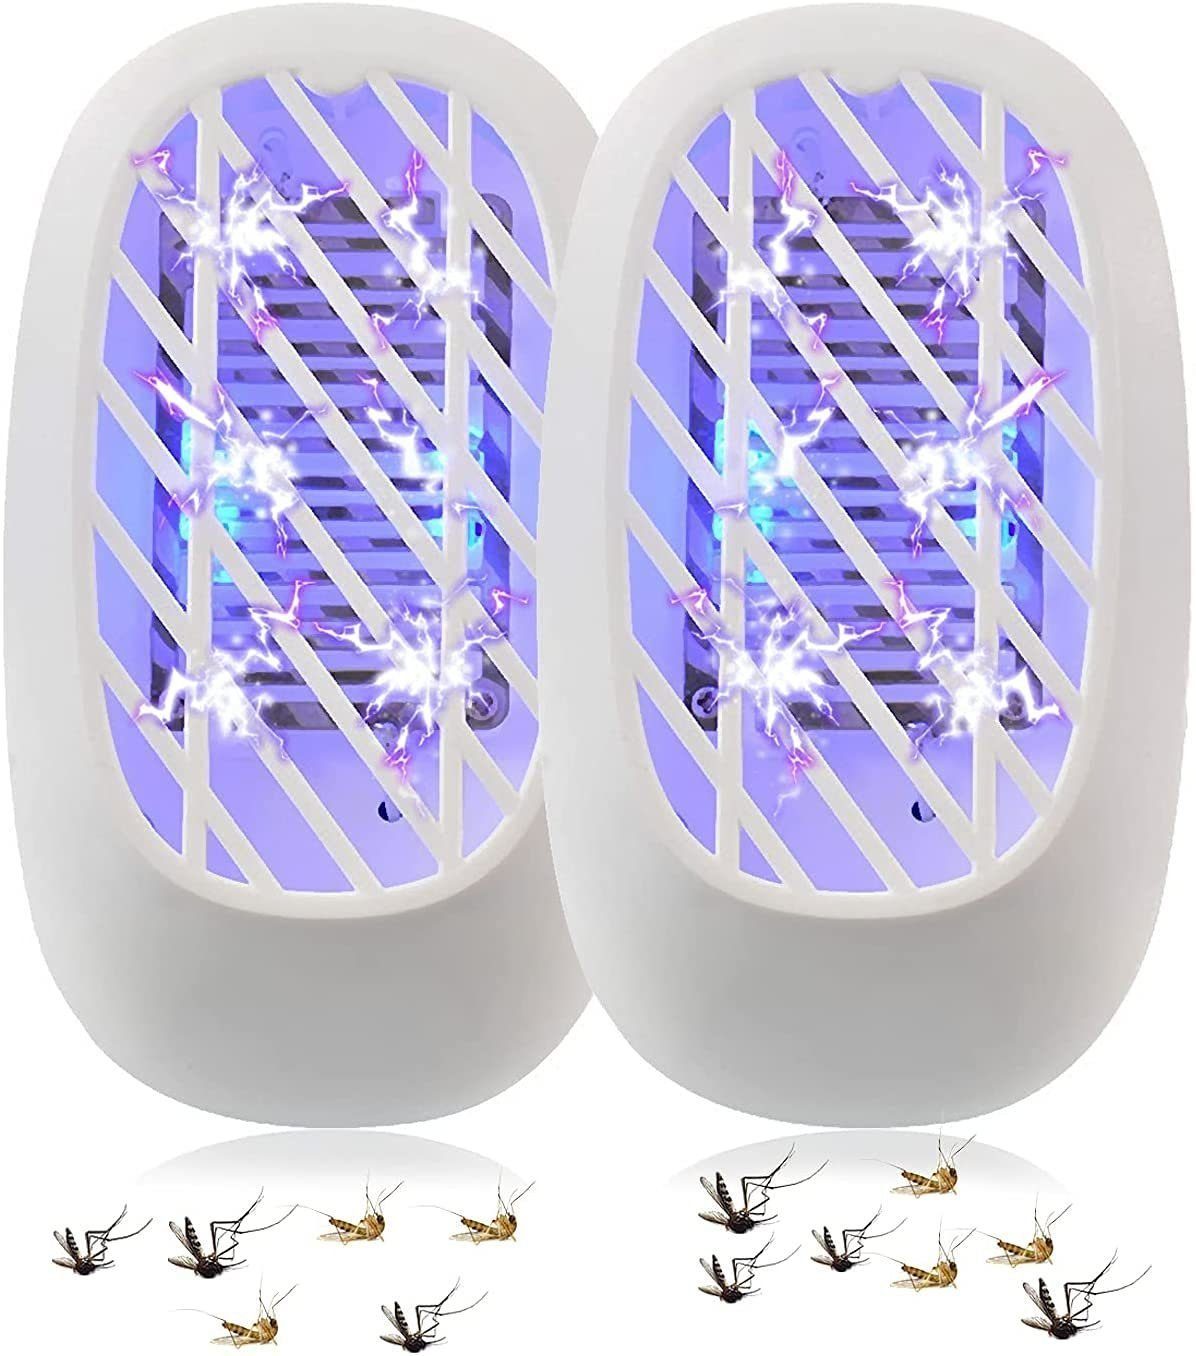 Vaxiuja Ultraschall-Tierabwehr »2 Stück UV-Insektenfalle,  Ultraschall-Tierabwehr, Mückenlampe, Fliegenfalle, keine giftige  Mückenvernichter-Lampe« online kaufen | OTTO